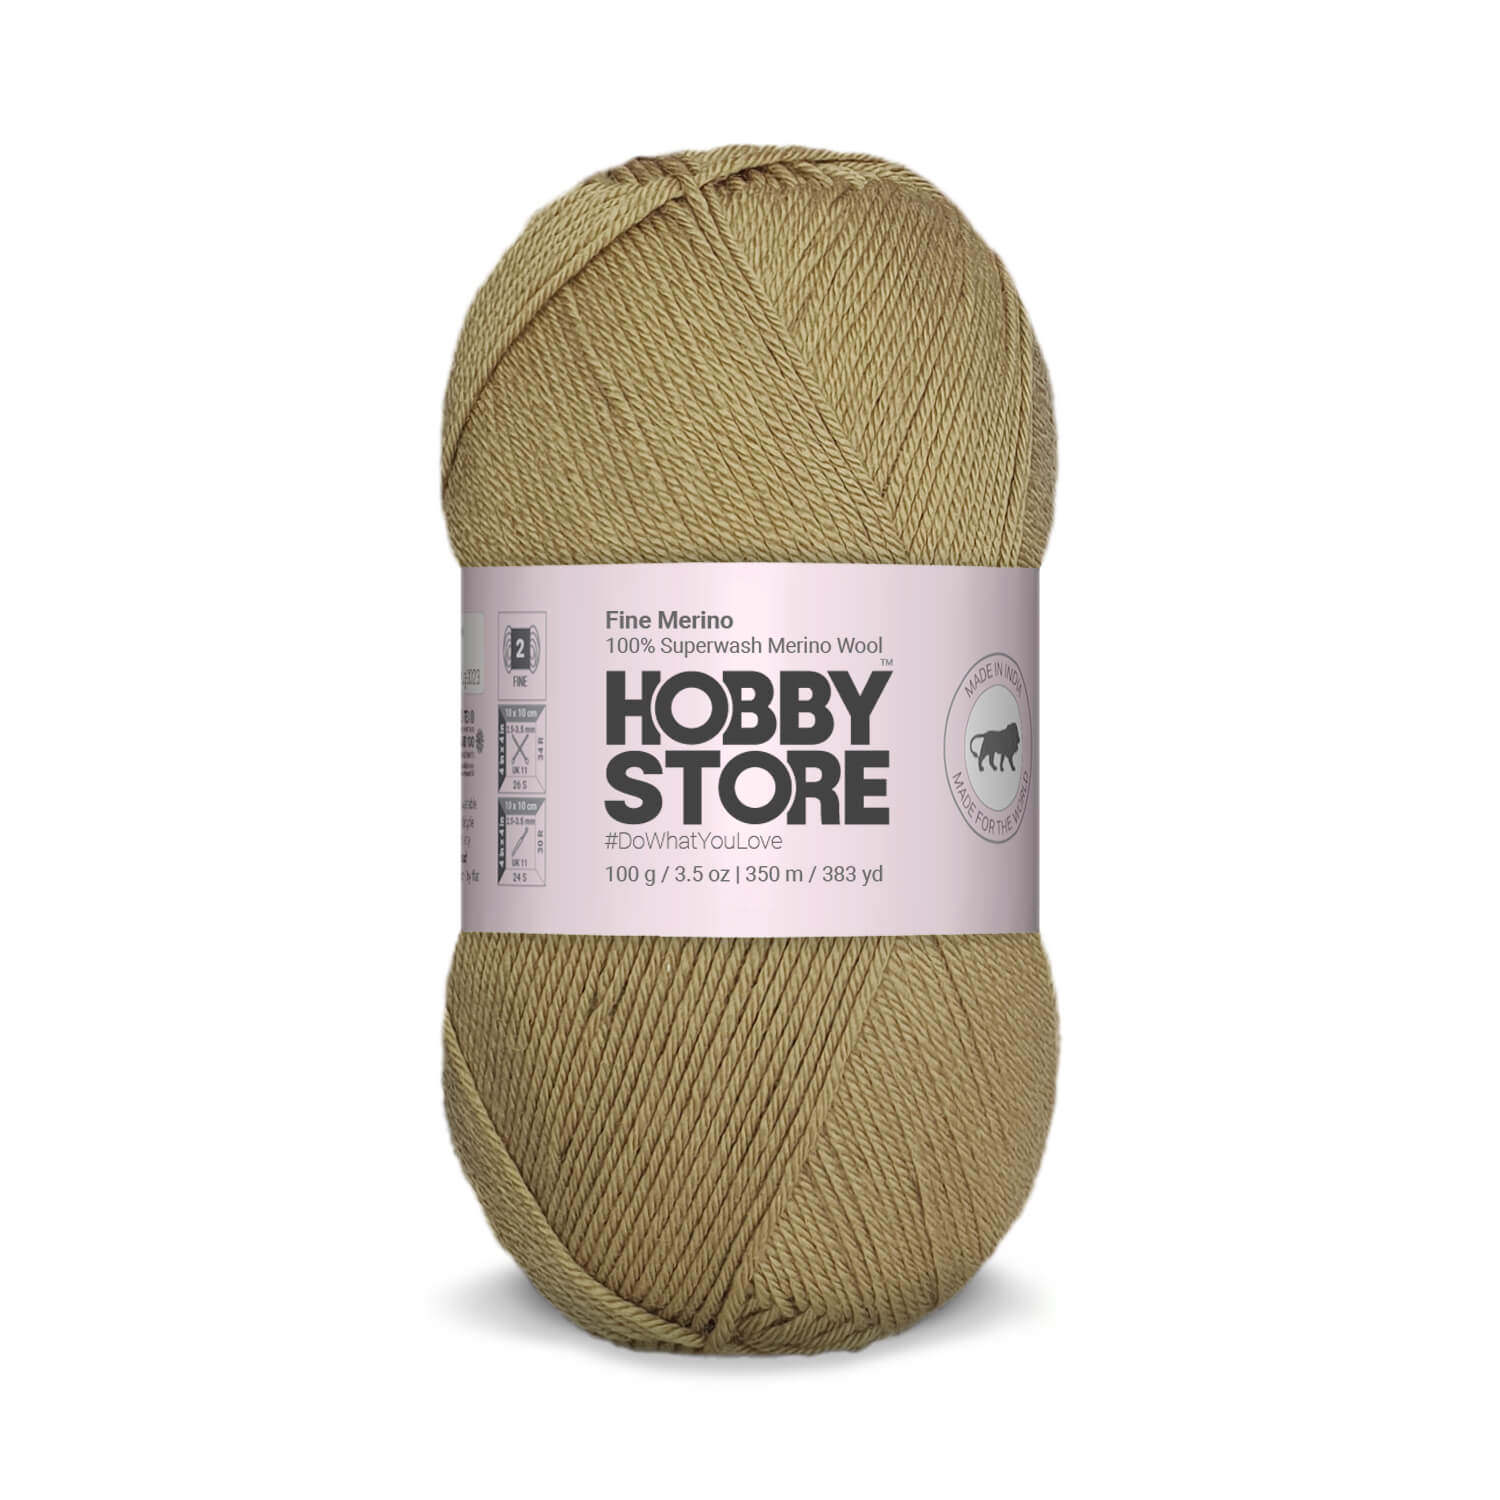 Fine Merino Wool by Hobby Store - Khaki FM001